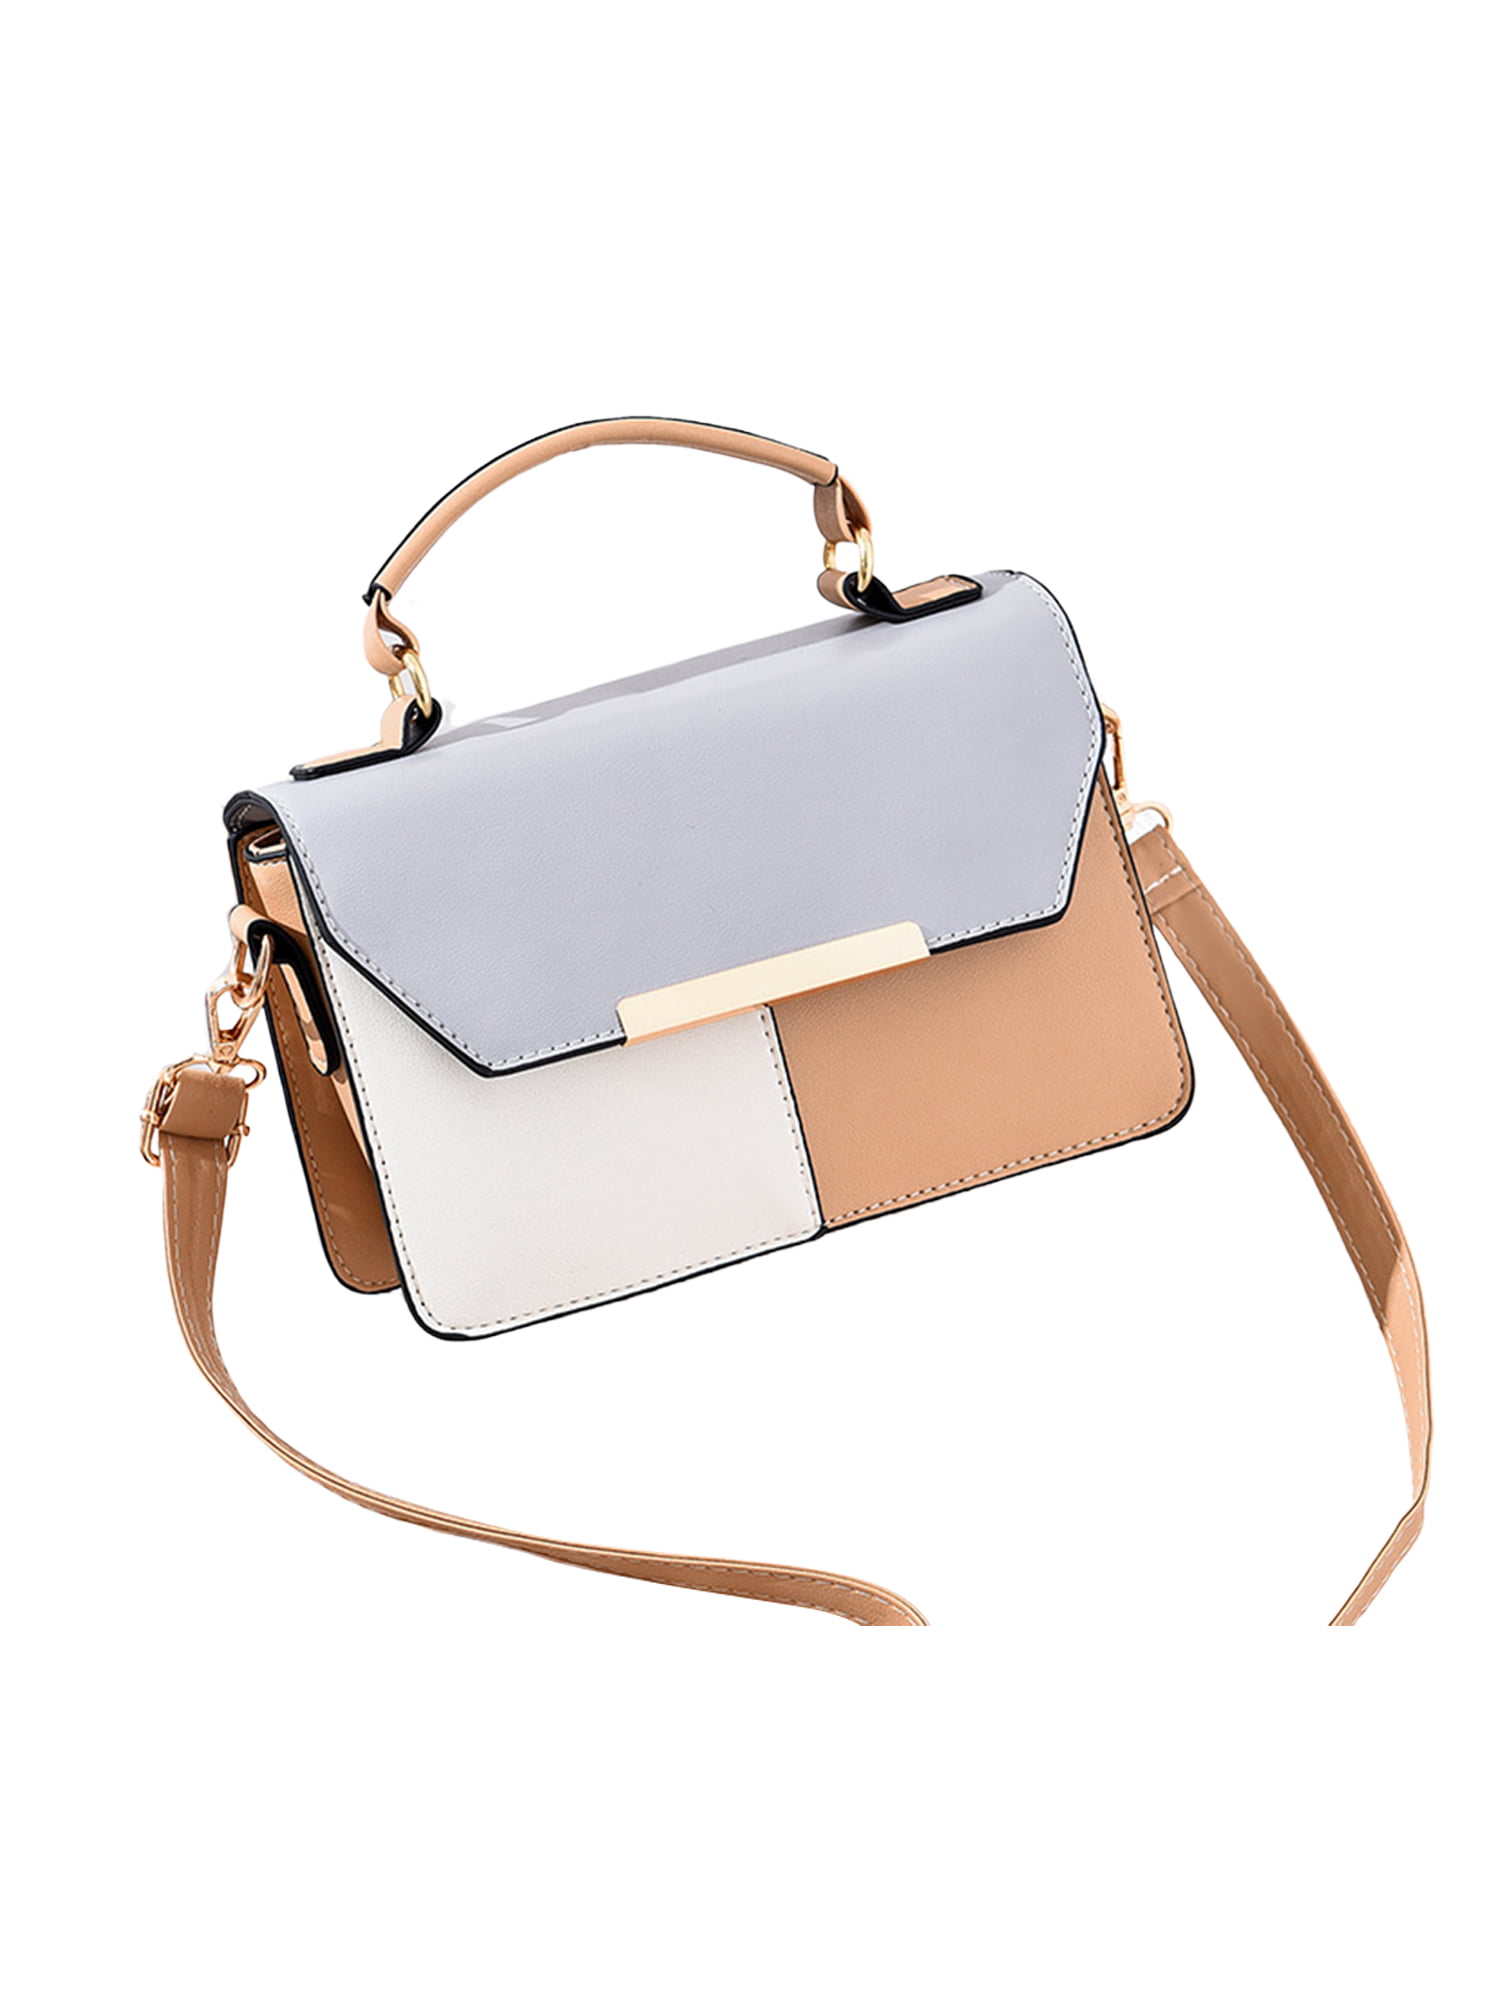 New Design Handbags Elegant Lady Hand Bag PU Leather Tote Shoulder